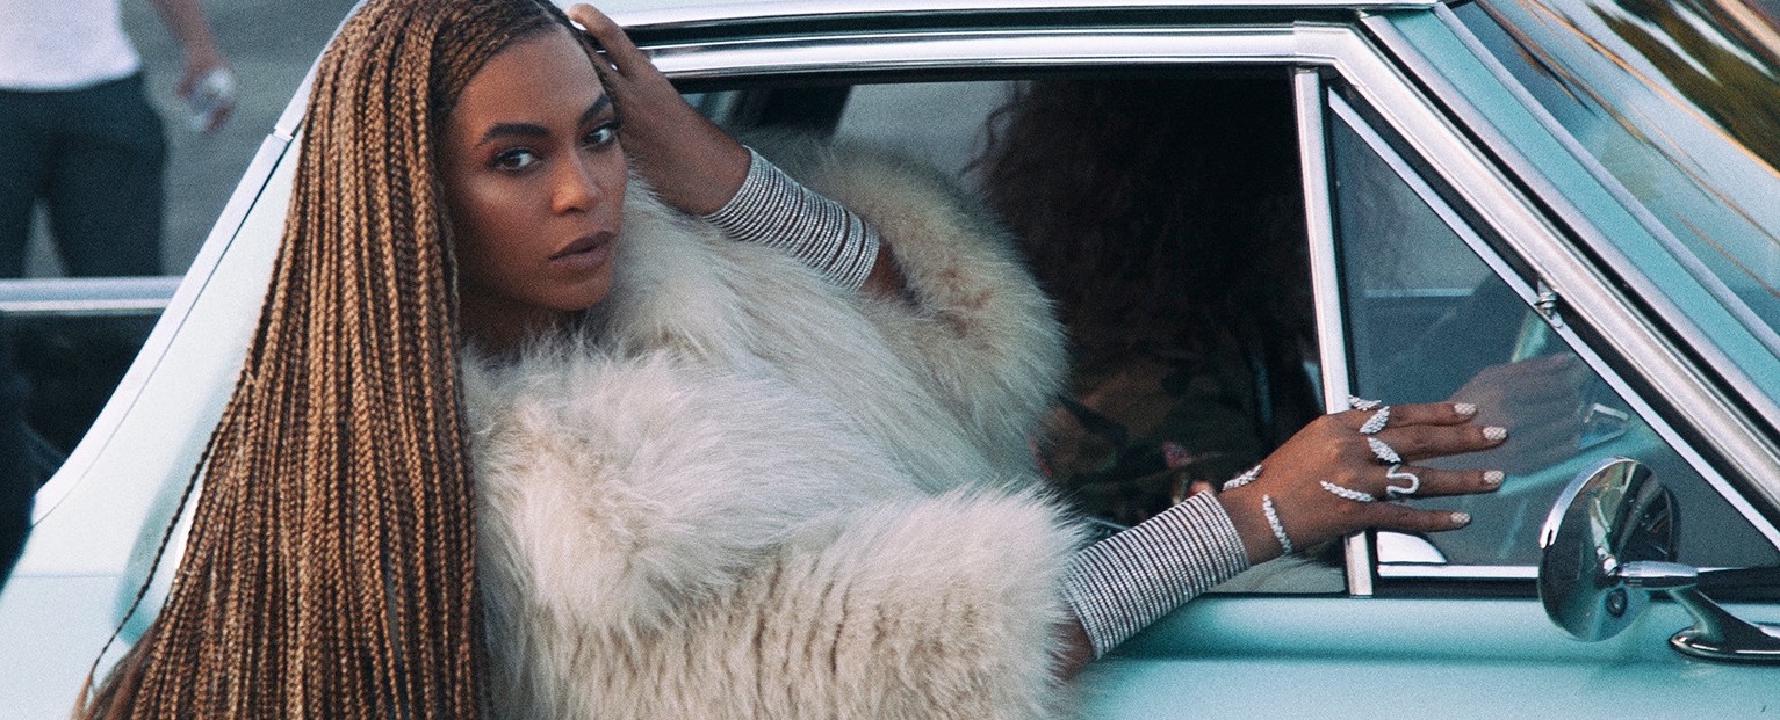 Promotional photograph of Beyoncé.